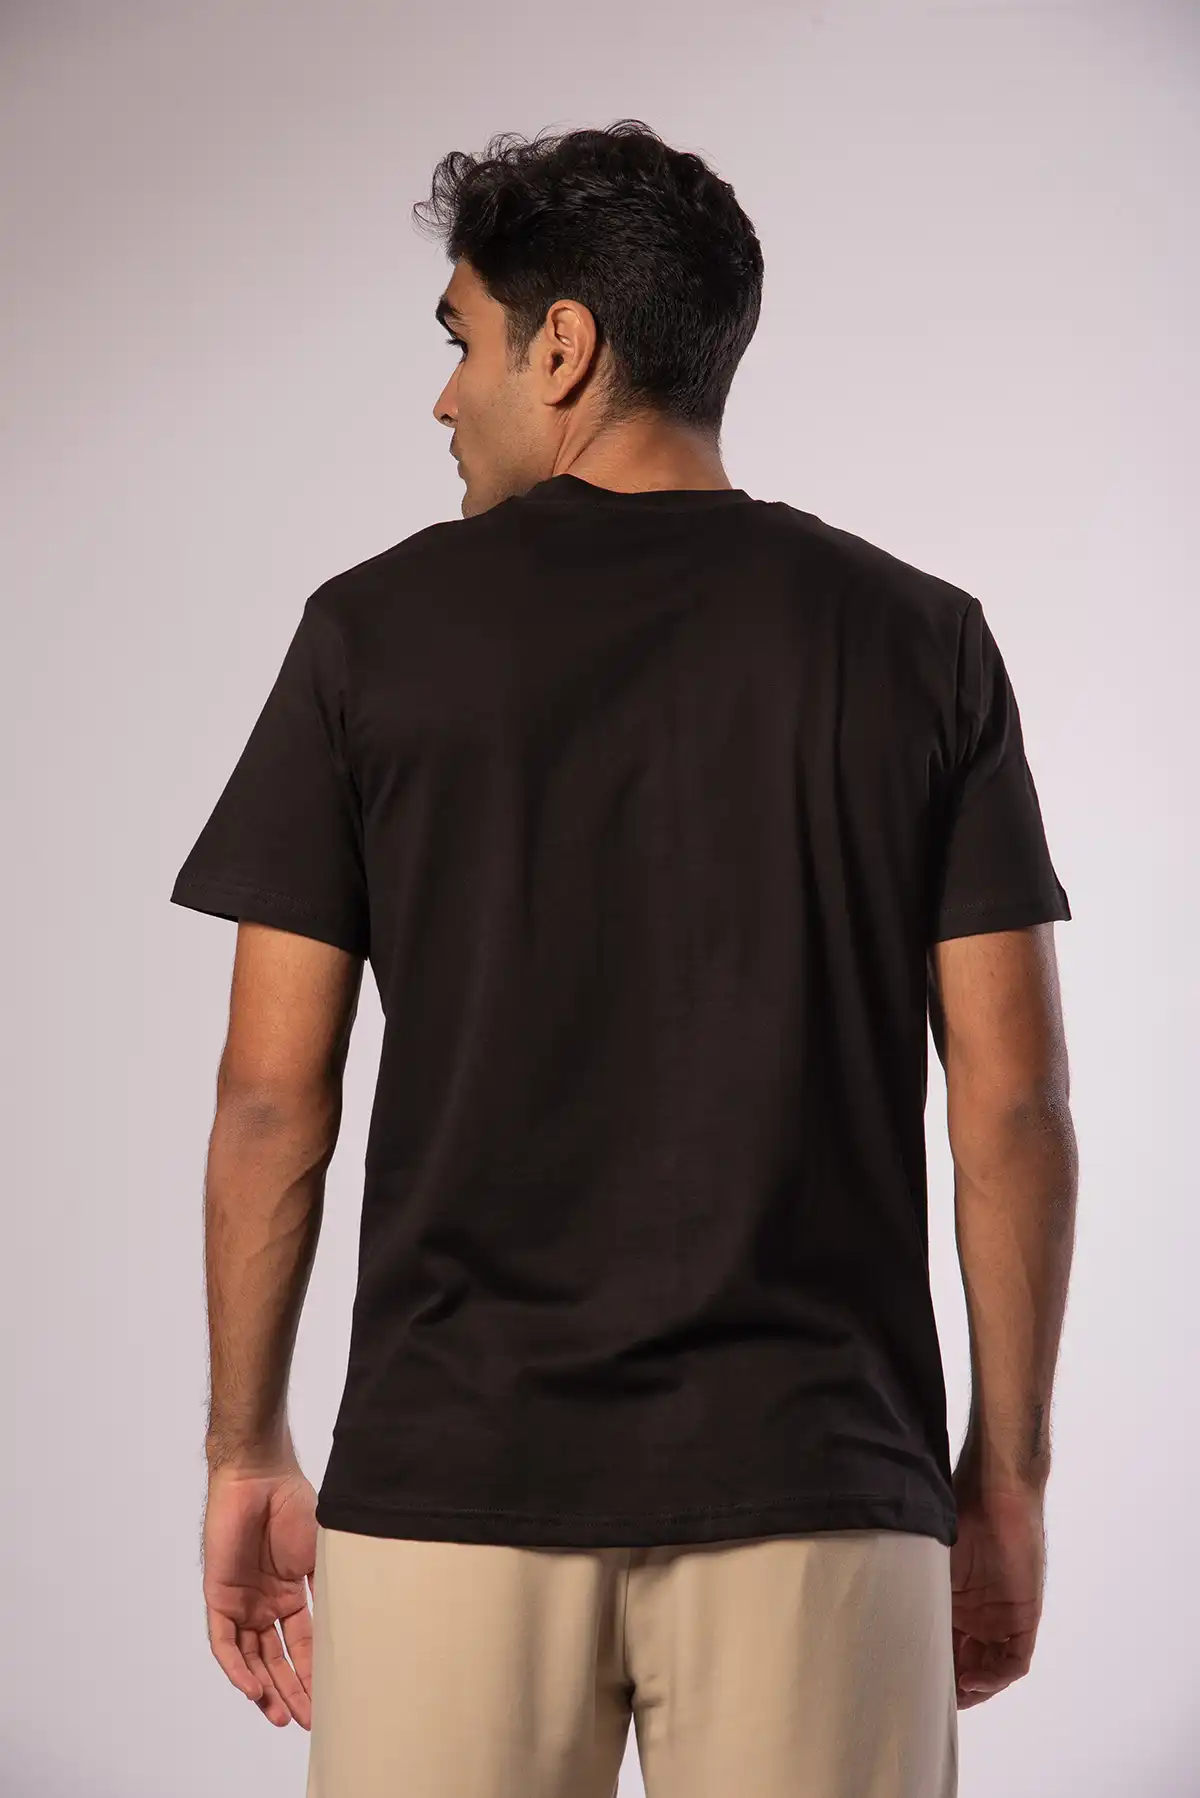 Unisex Crew Neck Cotton T-Shirt - Jet Black